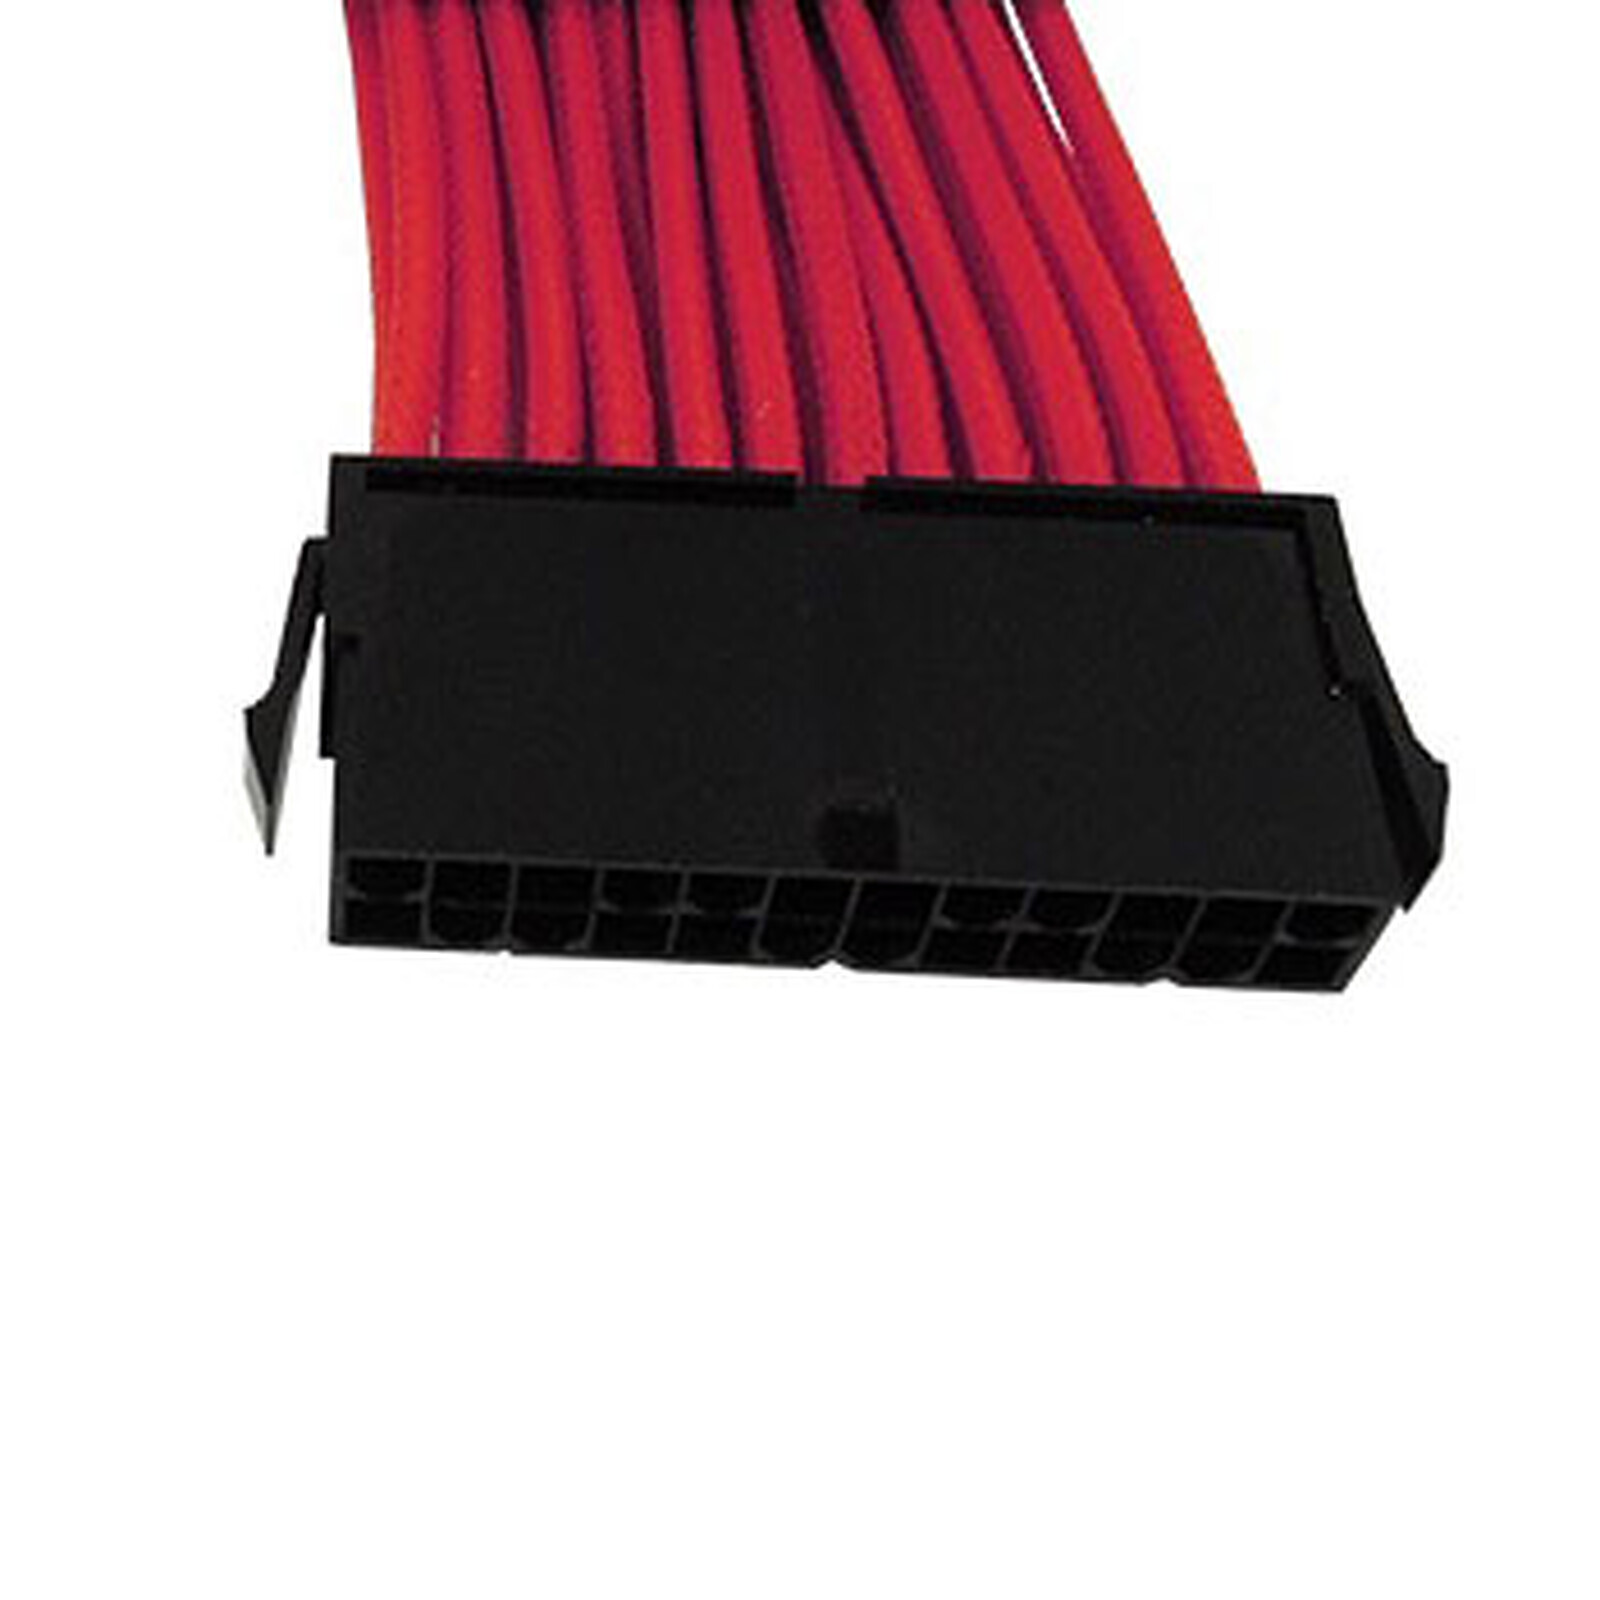 Gelid Câble Tressé PCIe 6+2 broches - 30 cm - Câble d'alimentation